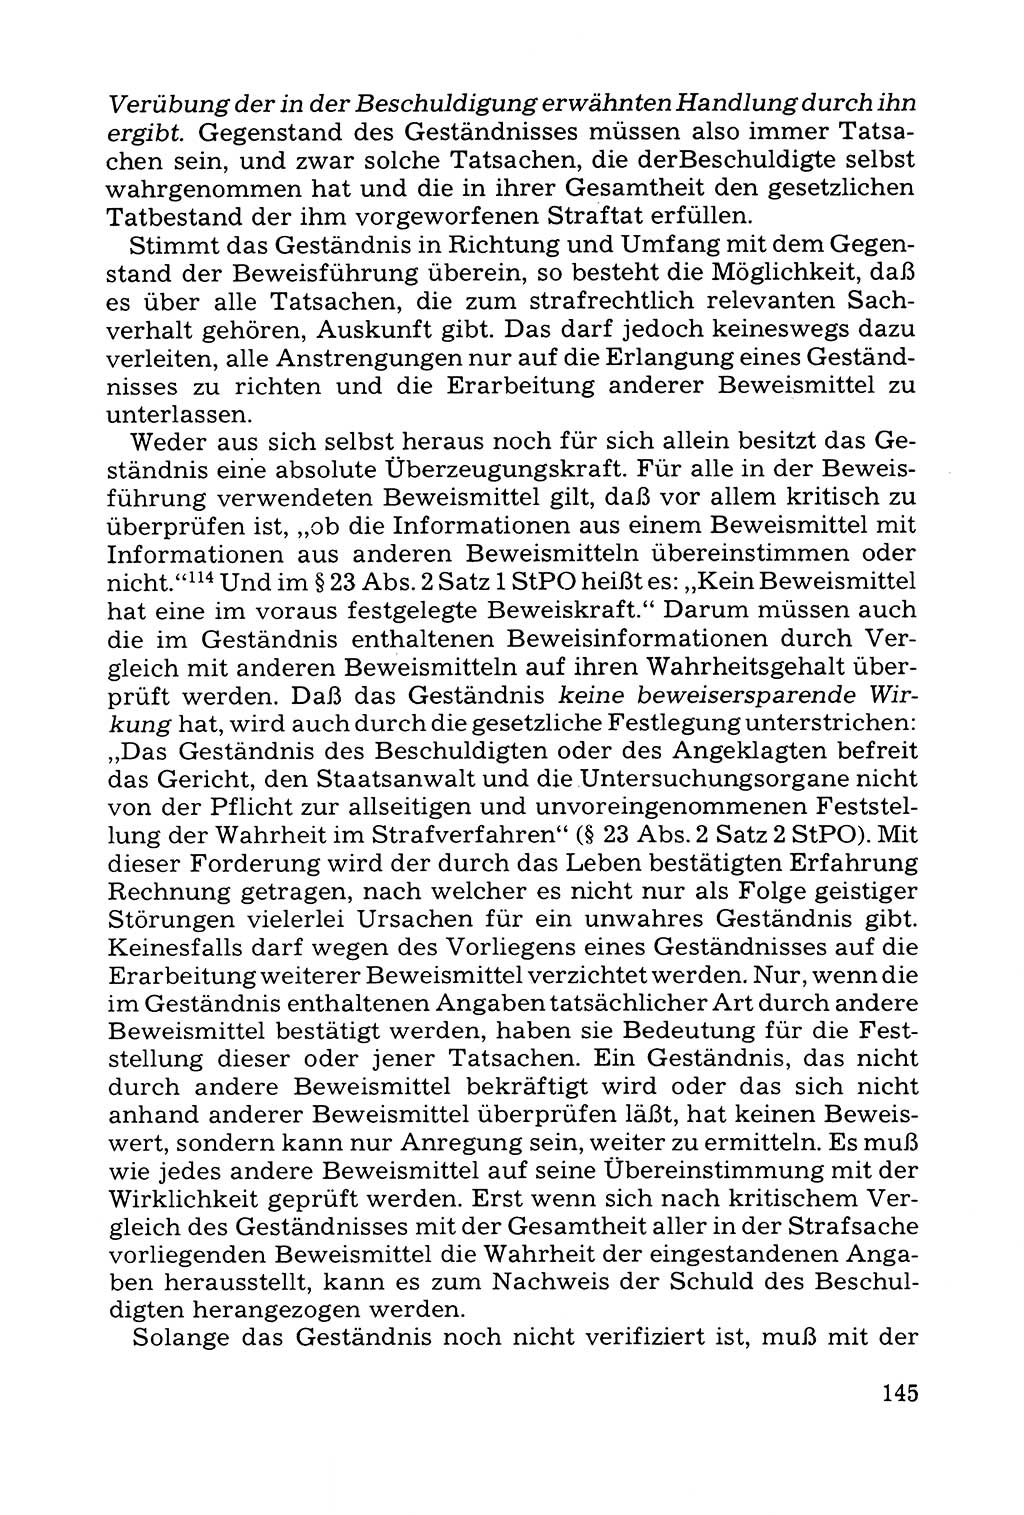 Grundfragen der Beweisführung im Ermittlungsverfahren [Deutsche Demokratische Republik (DDR)] 1980, Seite 145 (Bws.-Fhrg. EV DDR 1980, S. 145)